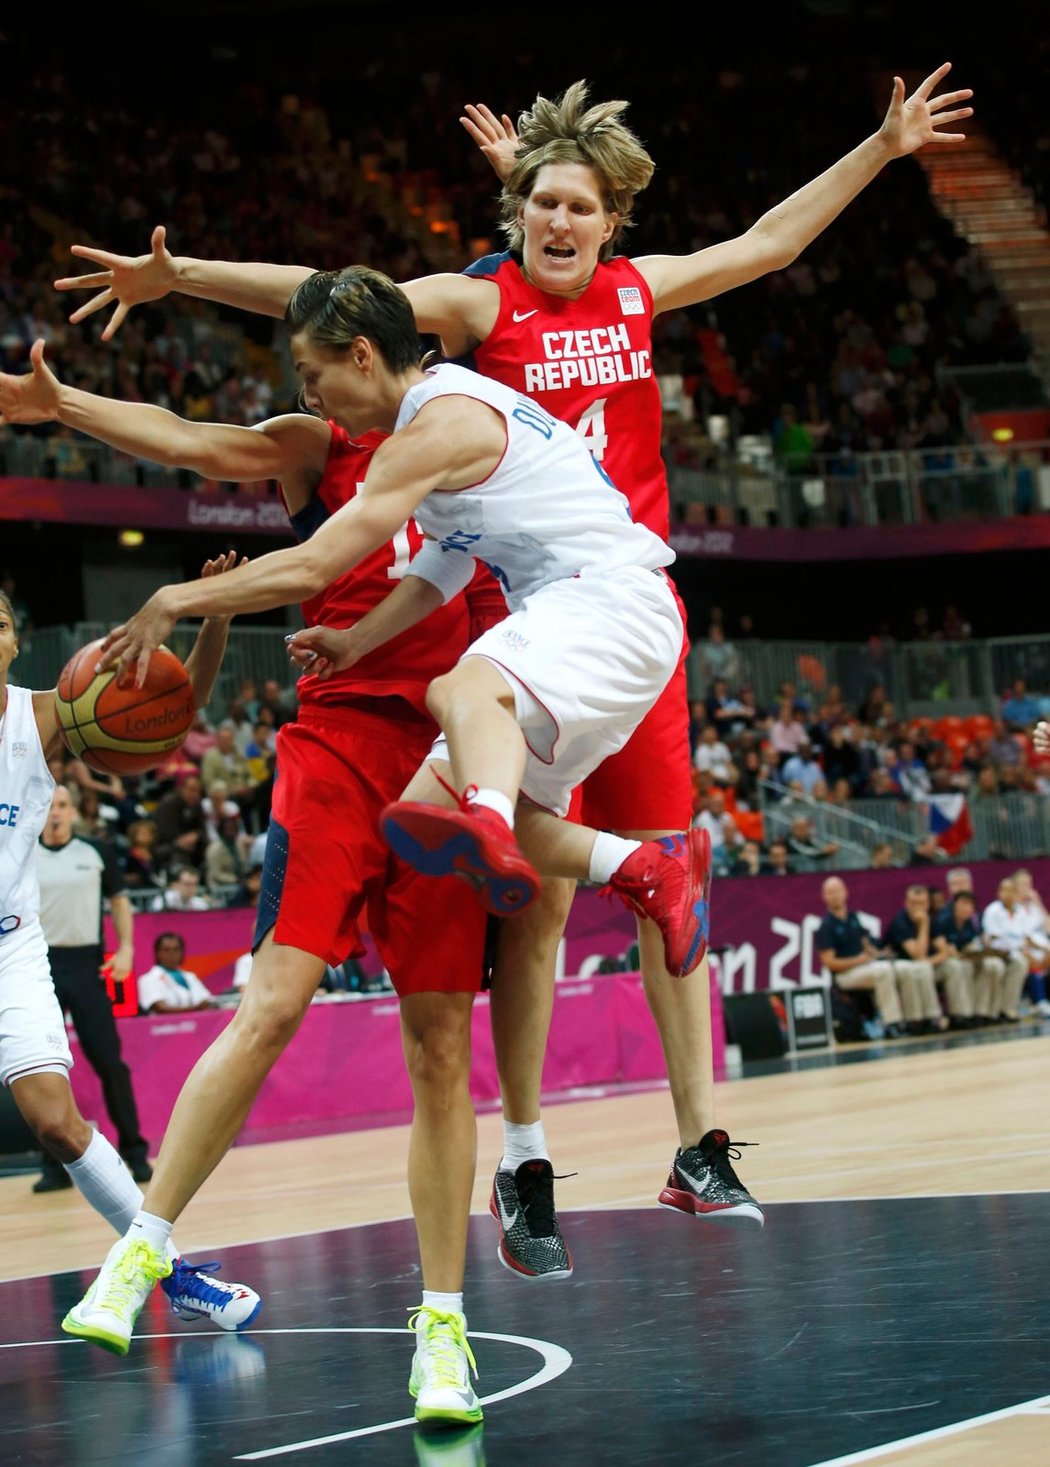 Francouzka Celine Dumercová skáče před Janou Veselou ve čtvrtfinále olympijských her